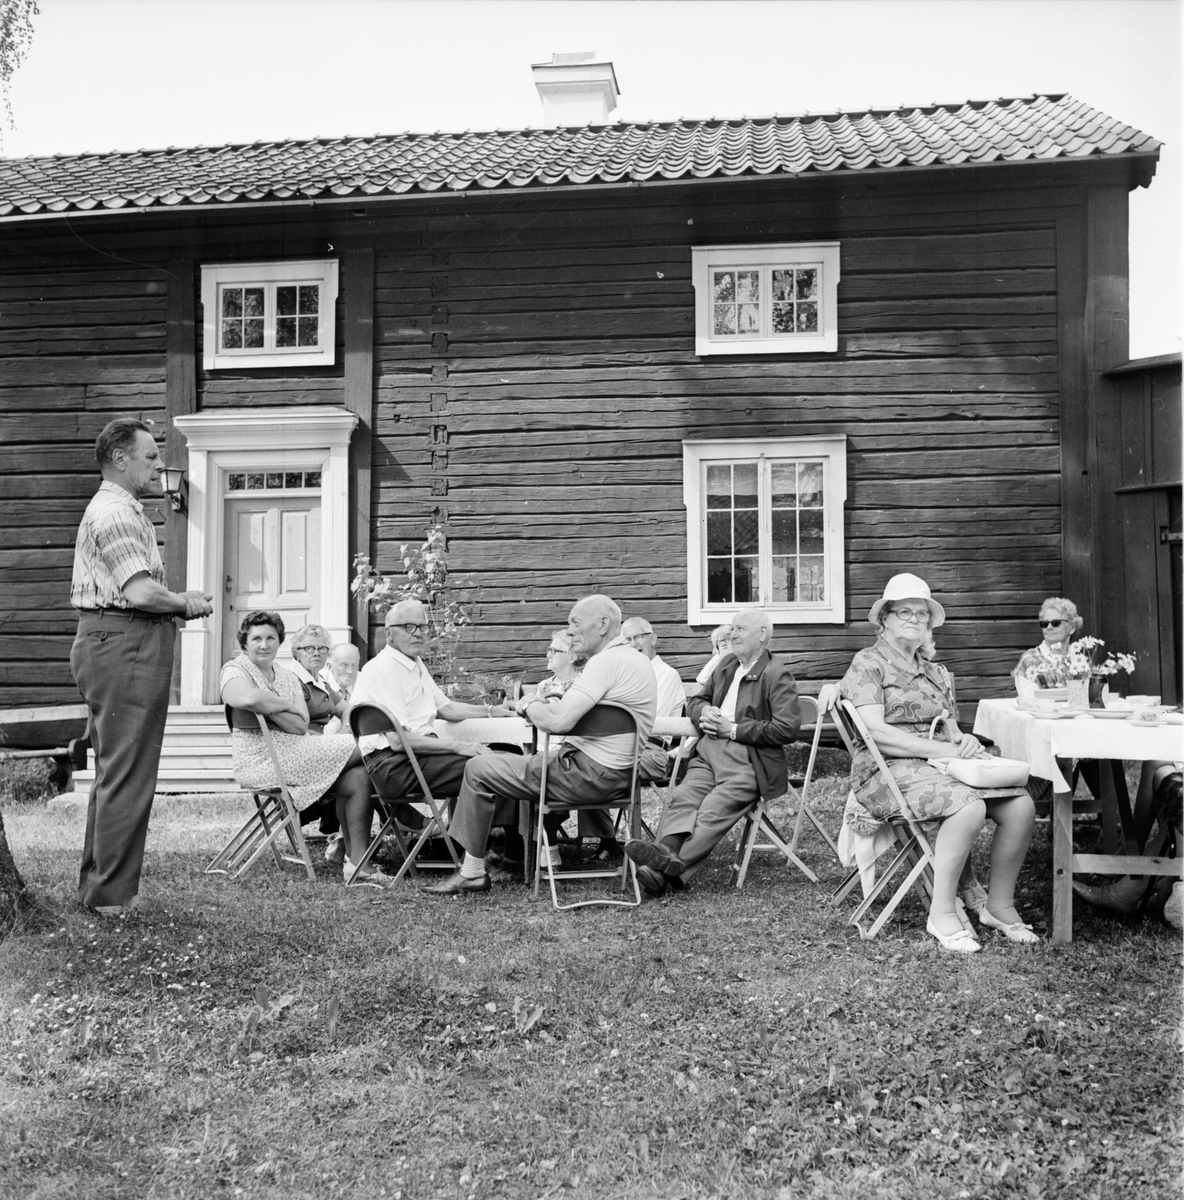 Fornhemmet,
Svante Häger talar ut Juli 1972